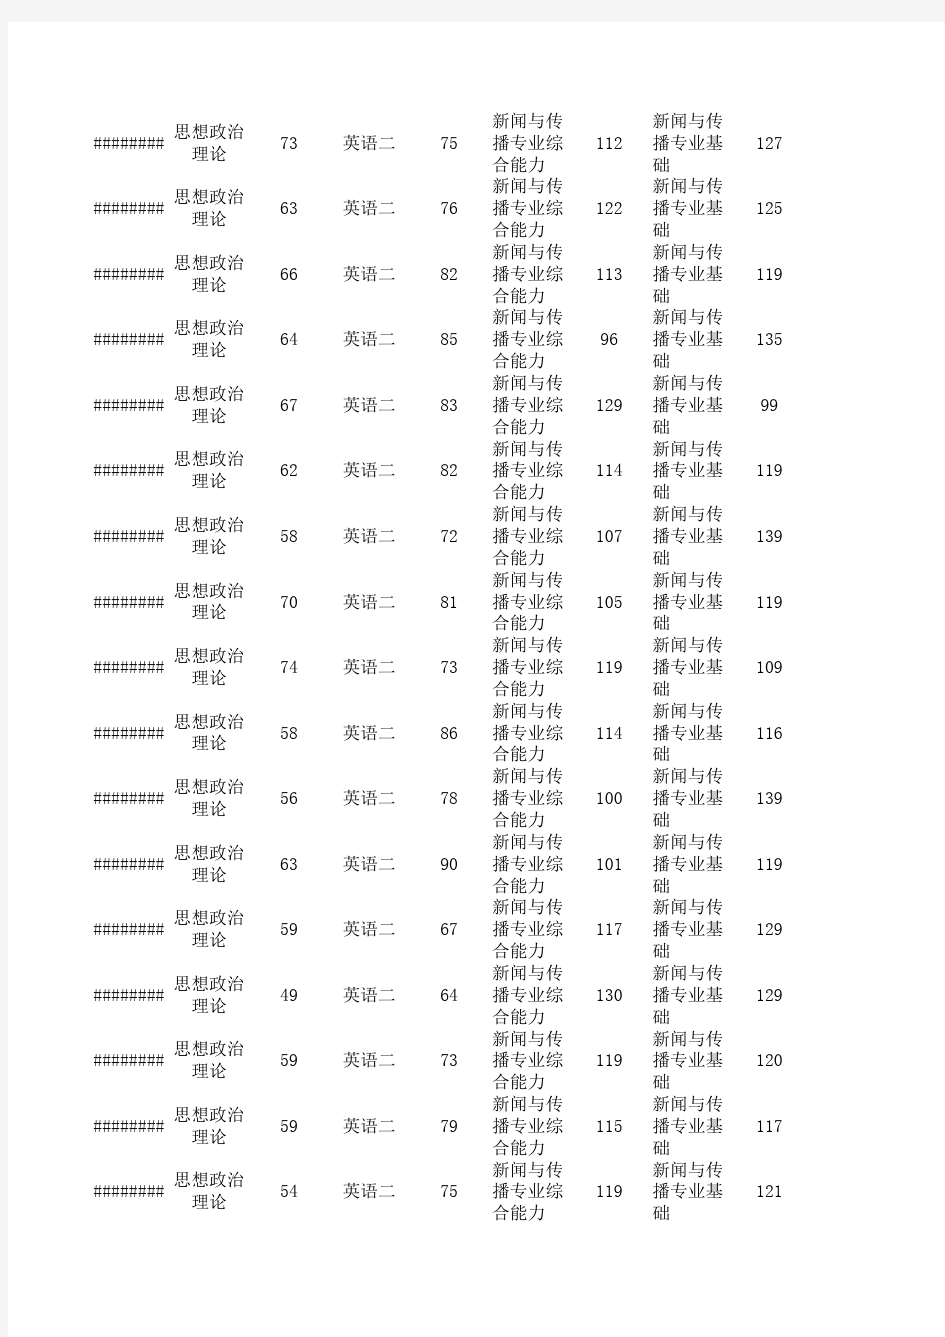 北京大学汇丰商学院财经传媒2017年考研成绩一览表